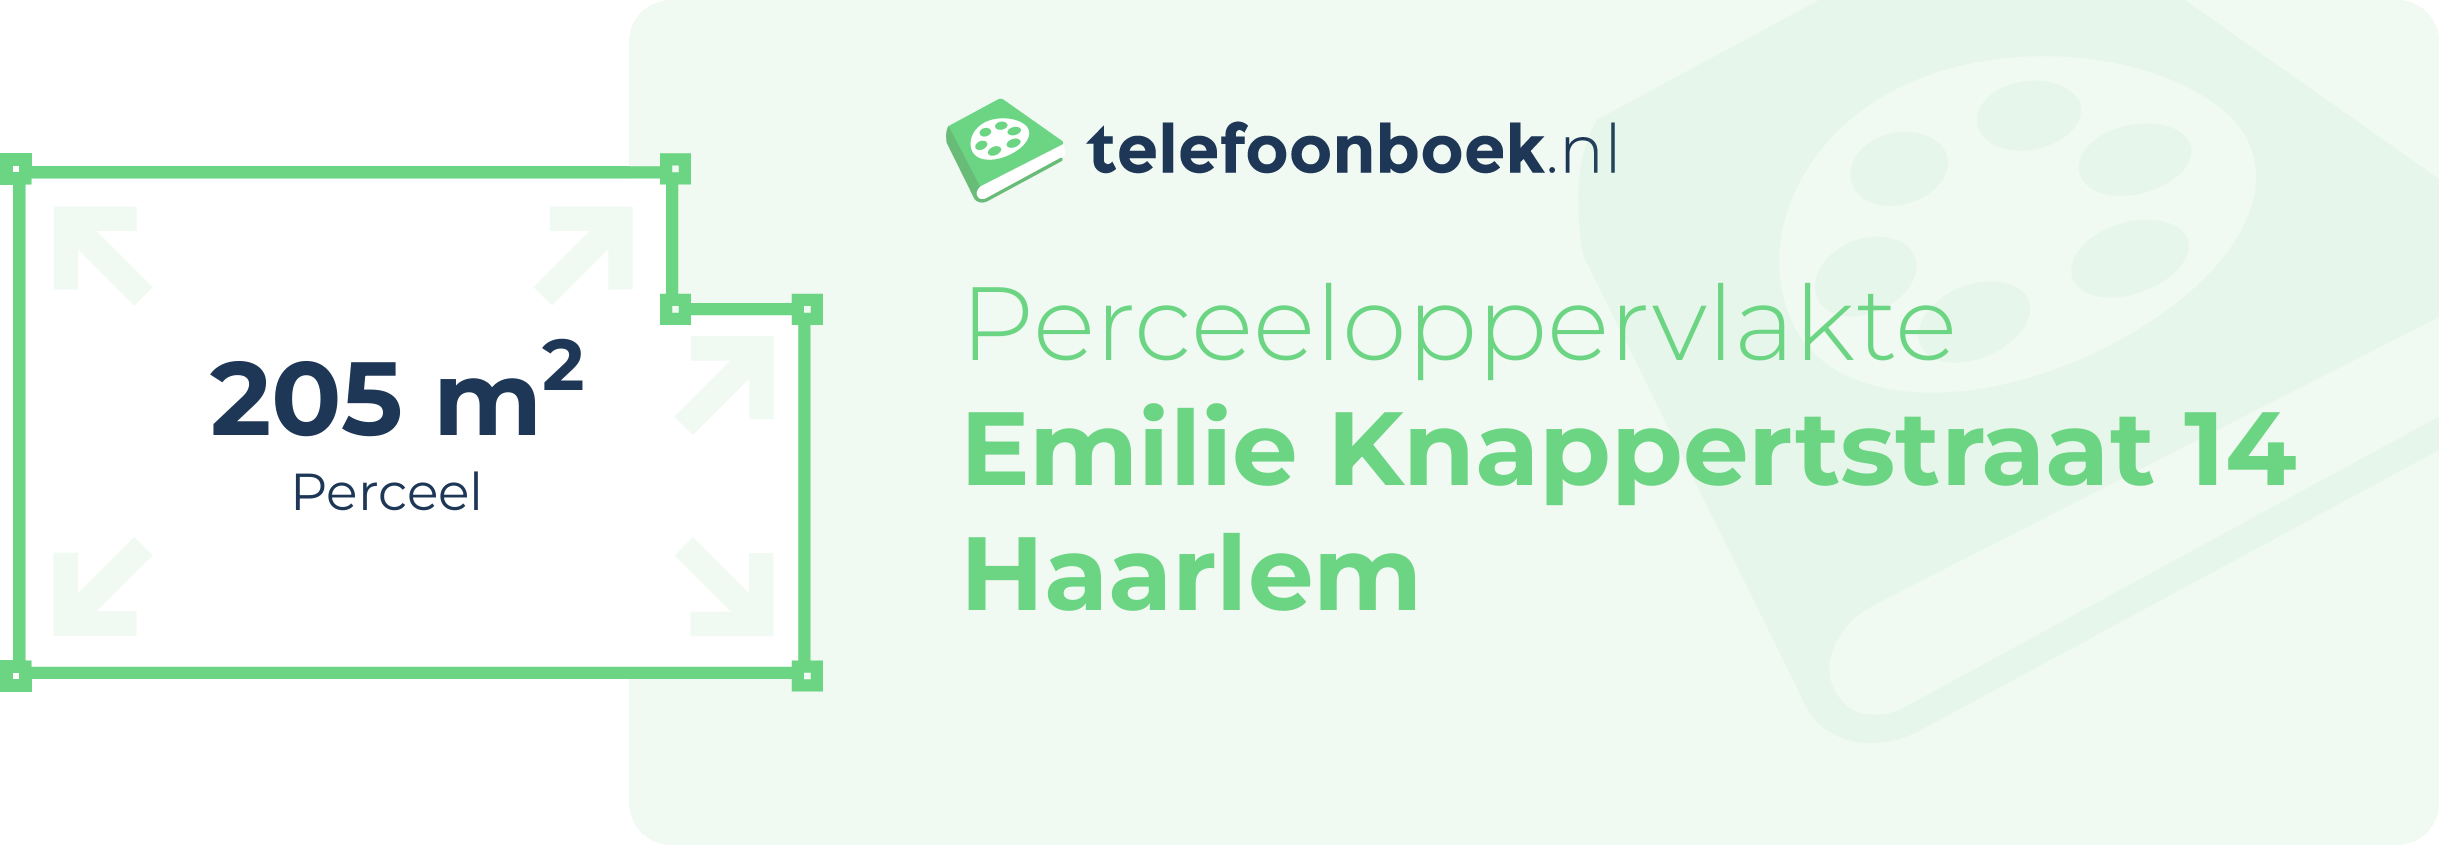 Perceeloppervlakte Emilie Knappertstraat 14 Haarlem